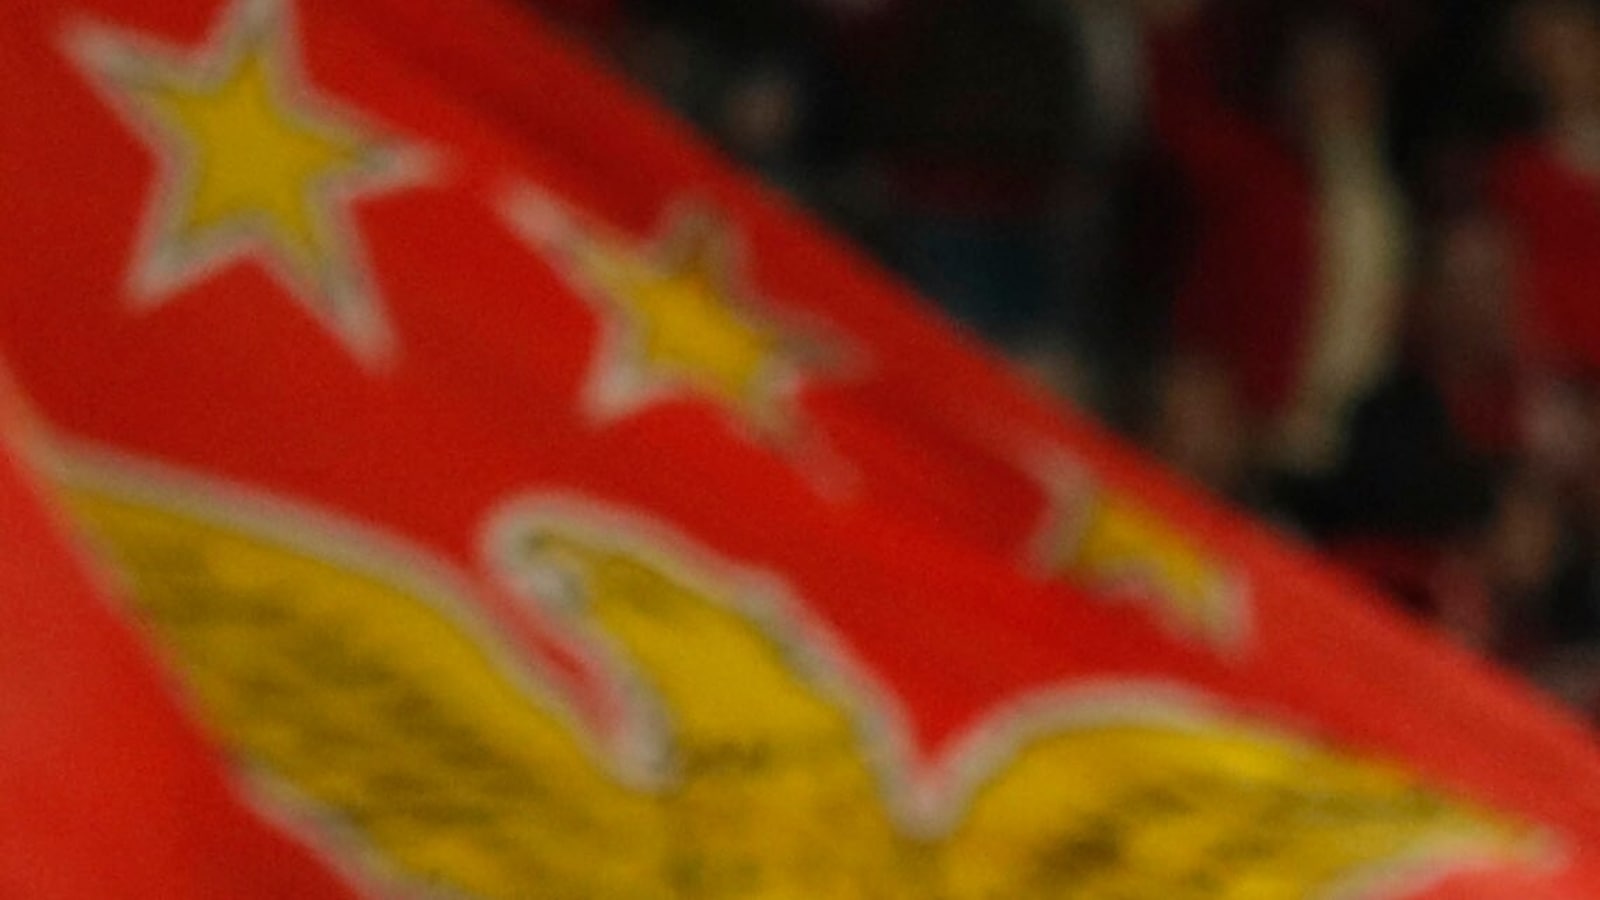 Clube português Benfica em apuros após e-mails hackeados expondo manipulação de resultados |  notícias de futebol